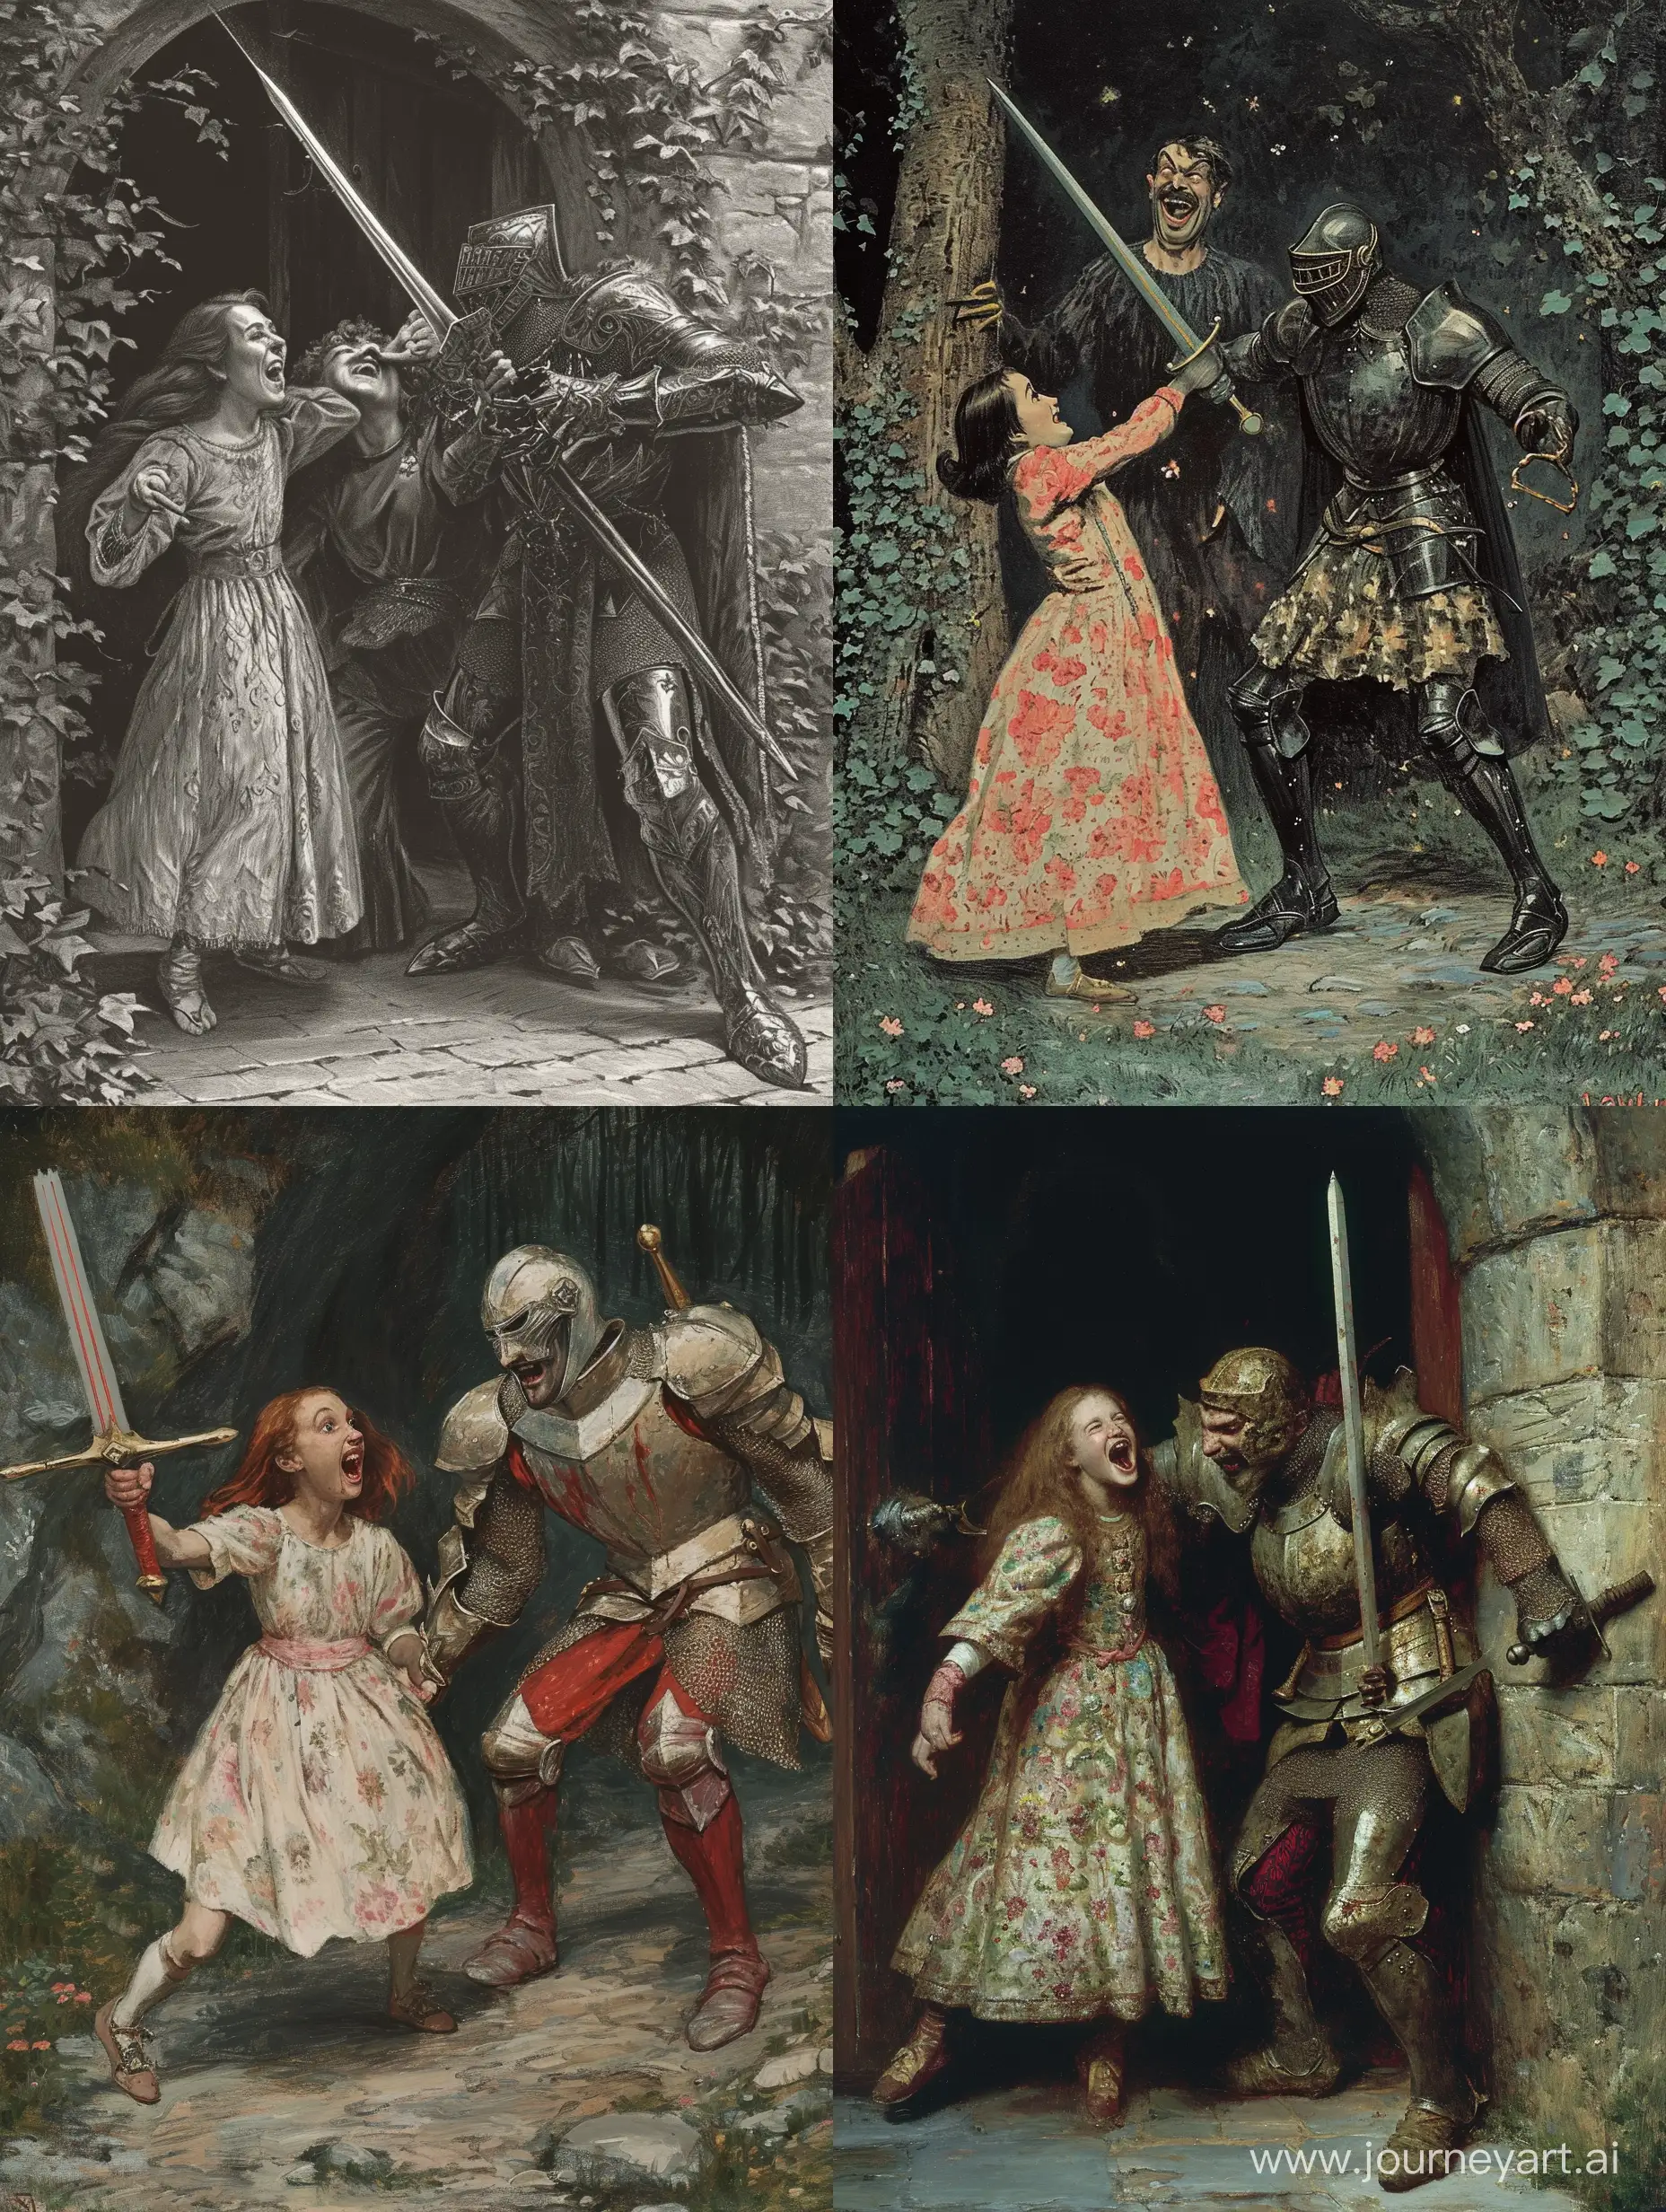 Рыцарь протыкает мечом смеющегося злодея и испуганную девушку в платье